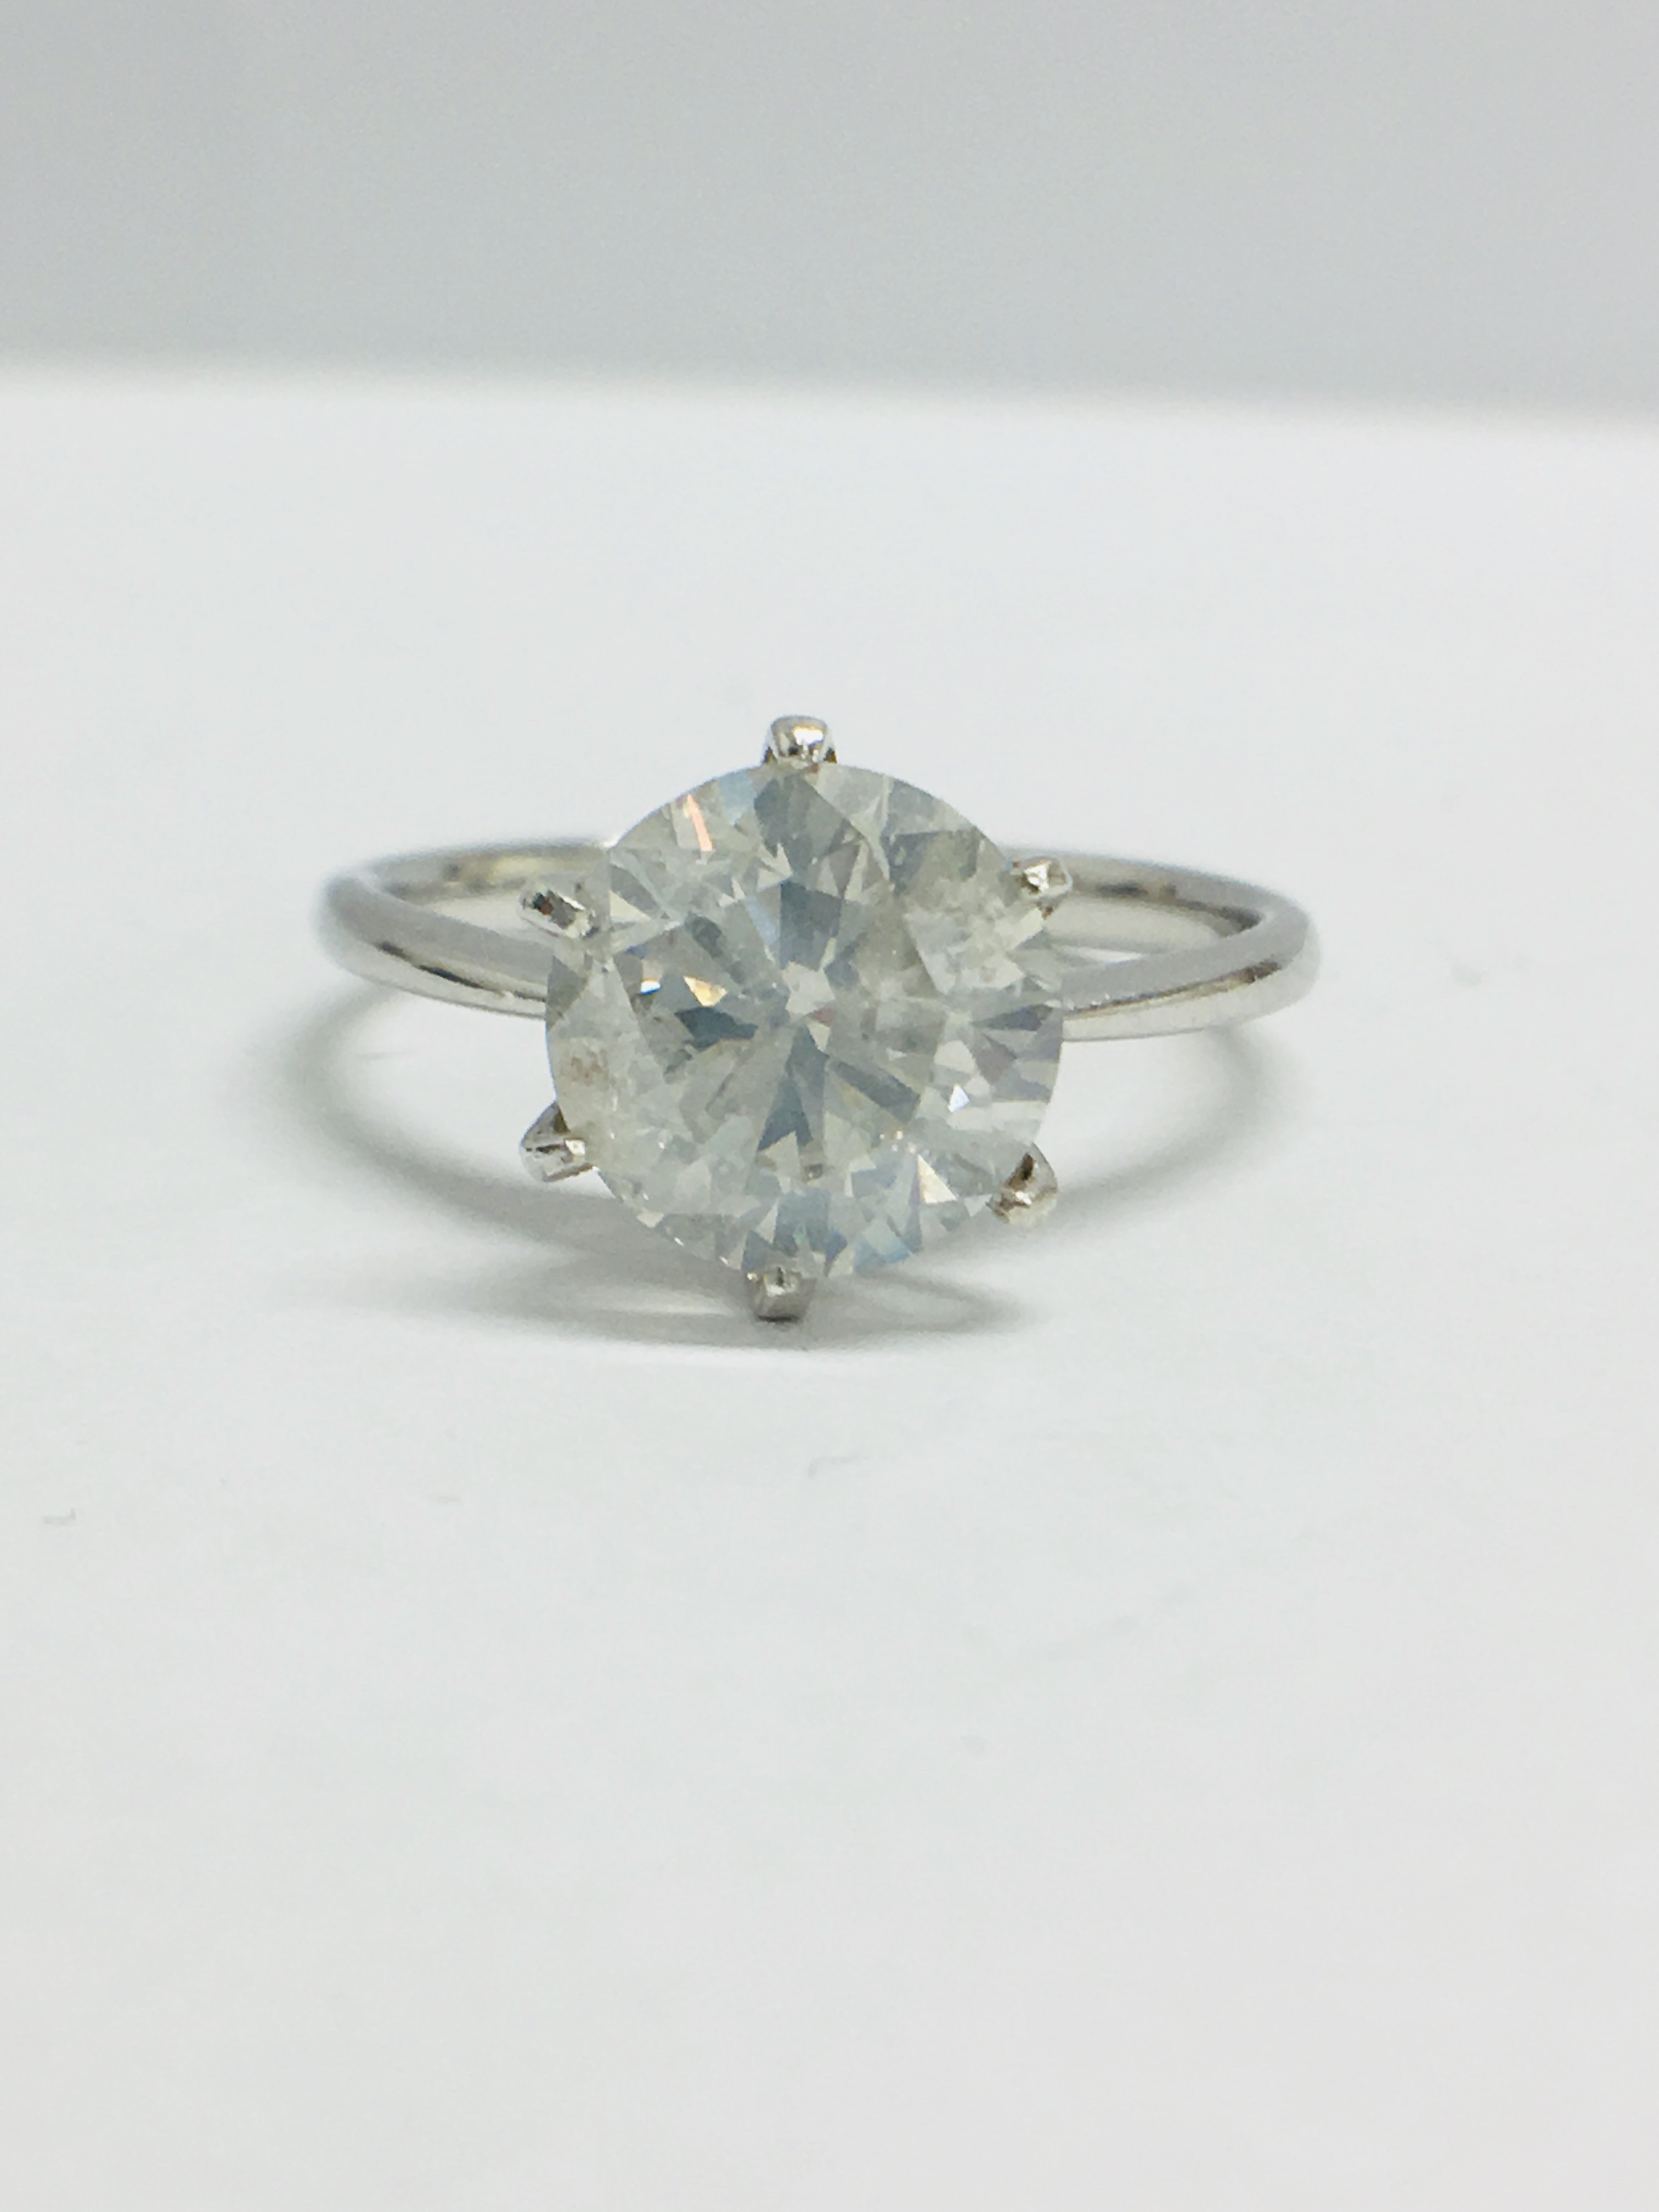 1.80ct diamond solitaire ring set in Platinum setting